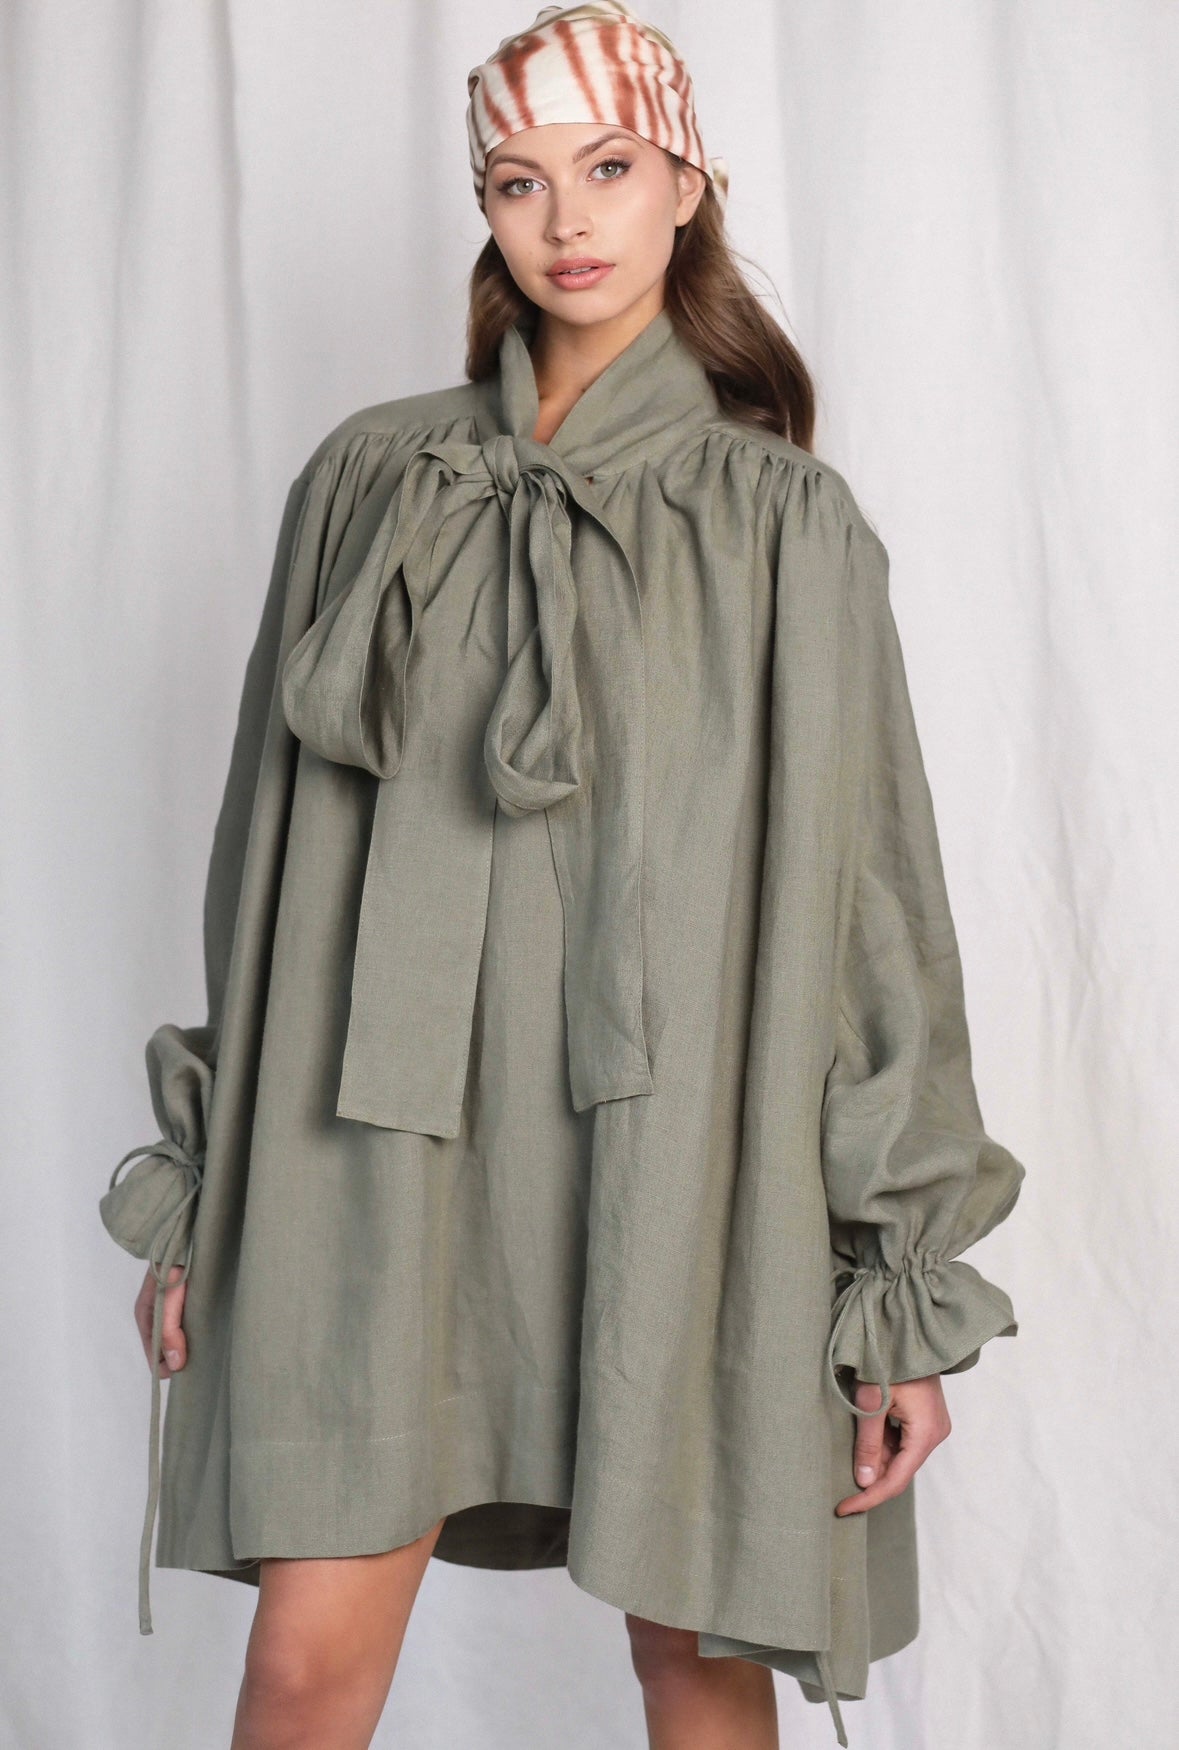 Eve Dramatic Khaki Linen Mini Dress